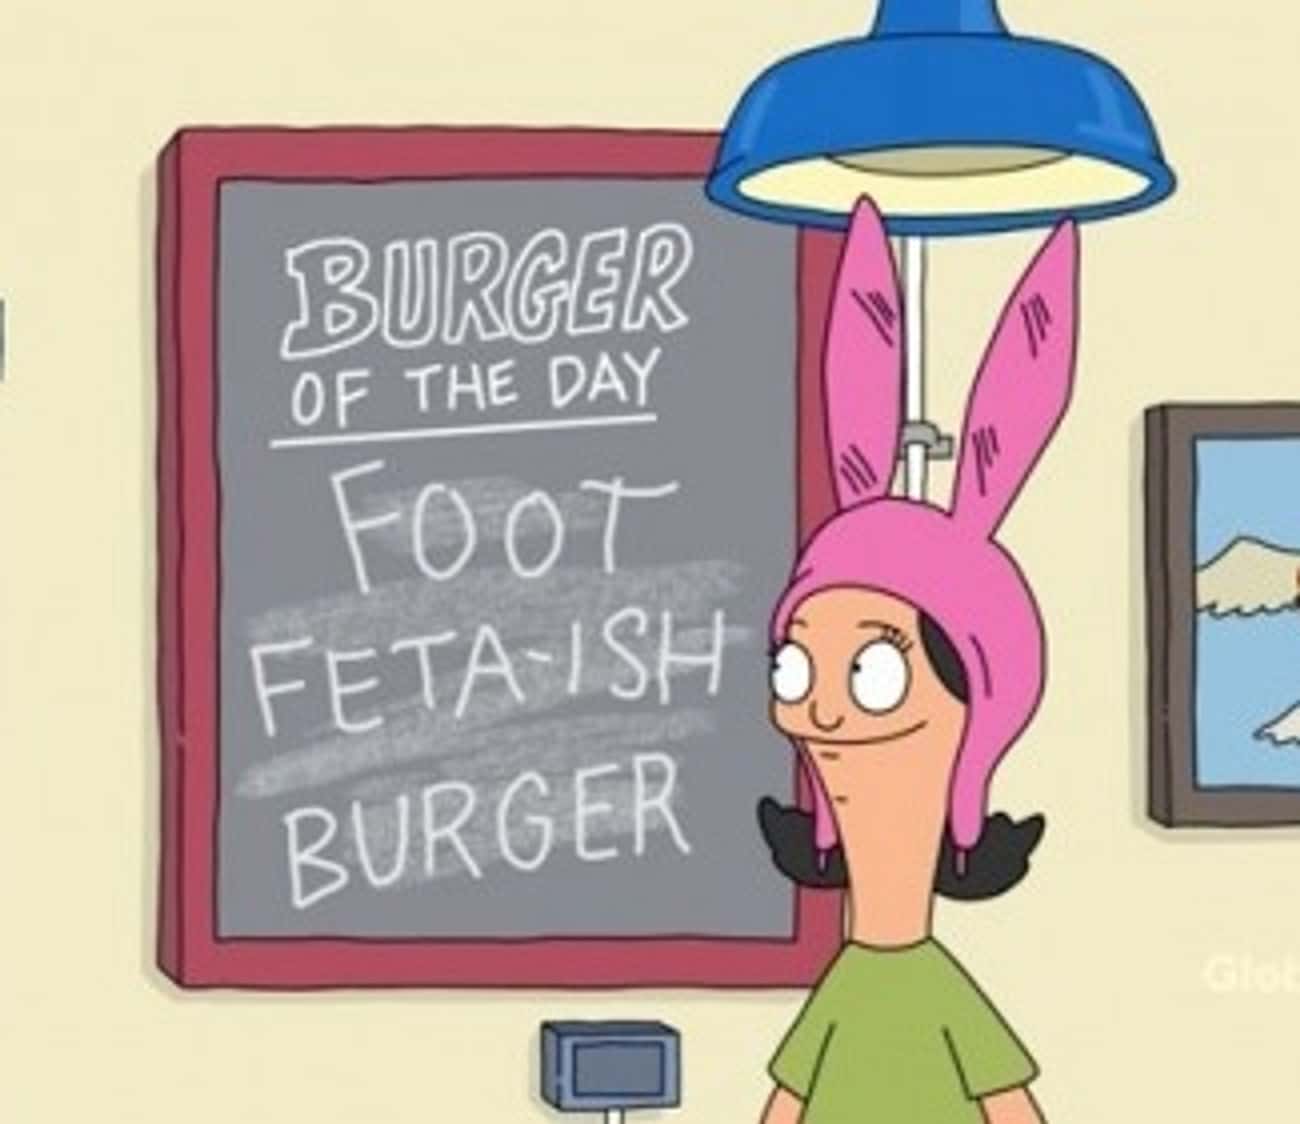 Foot Feta-ish Burger